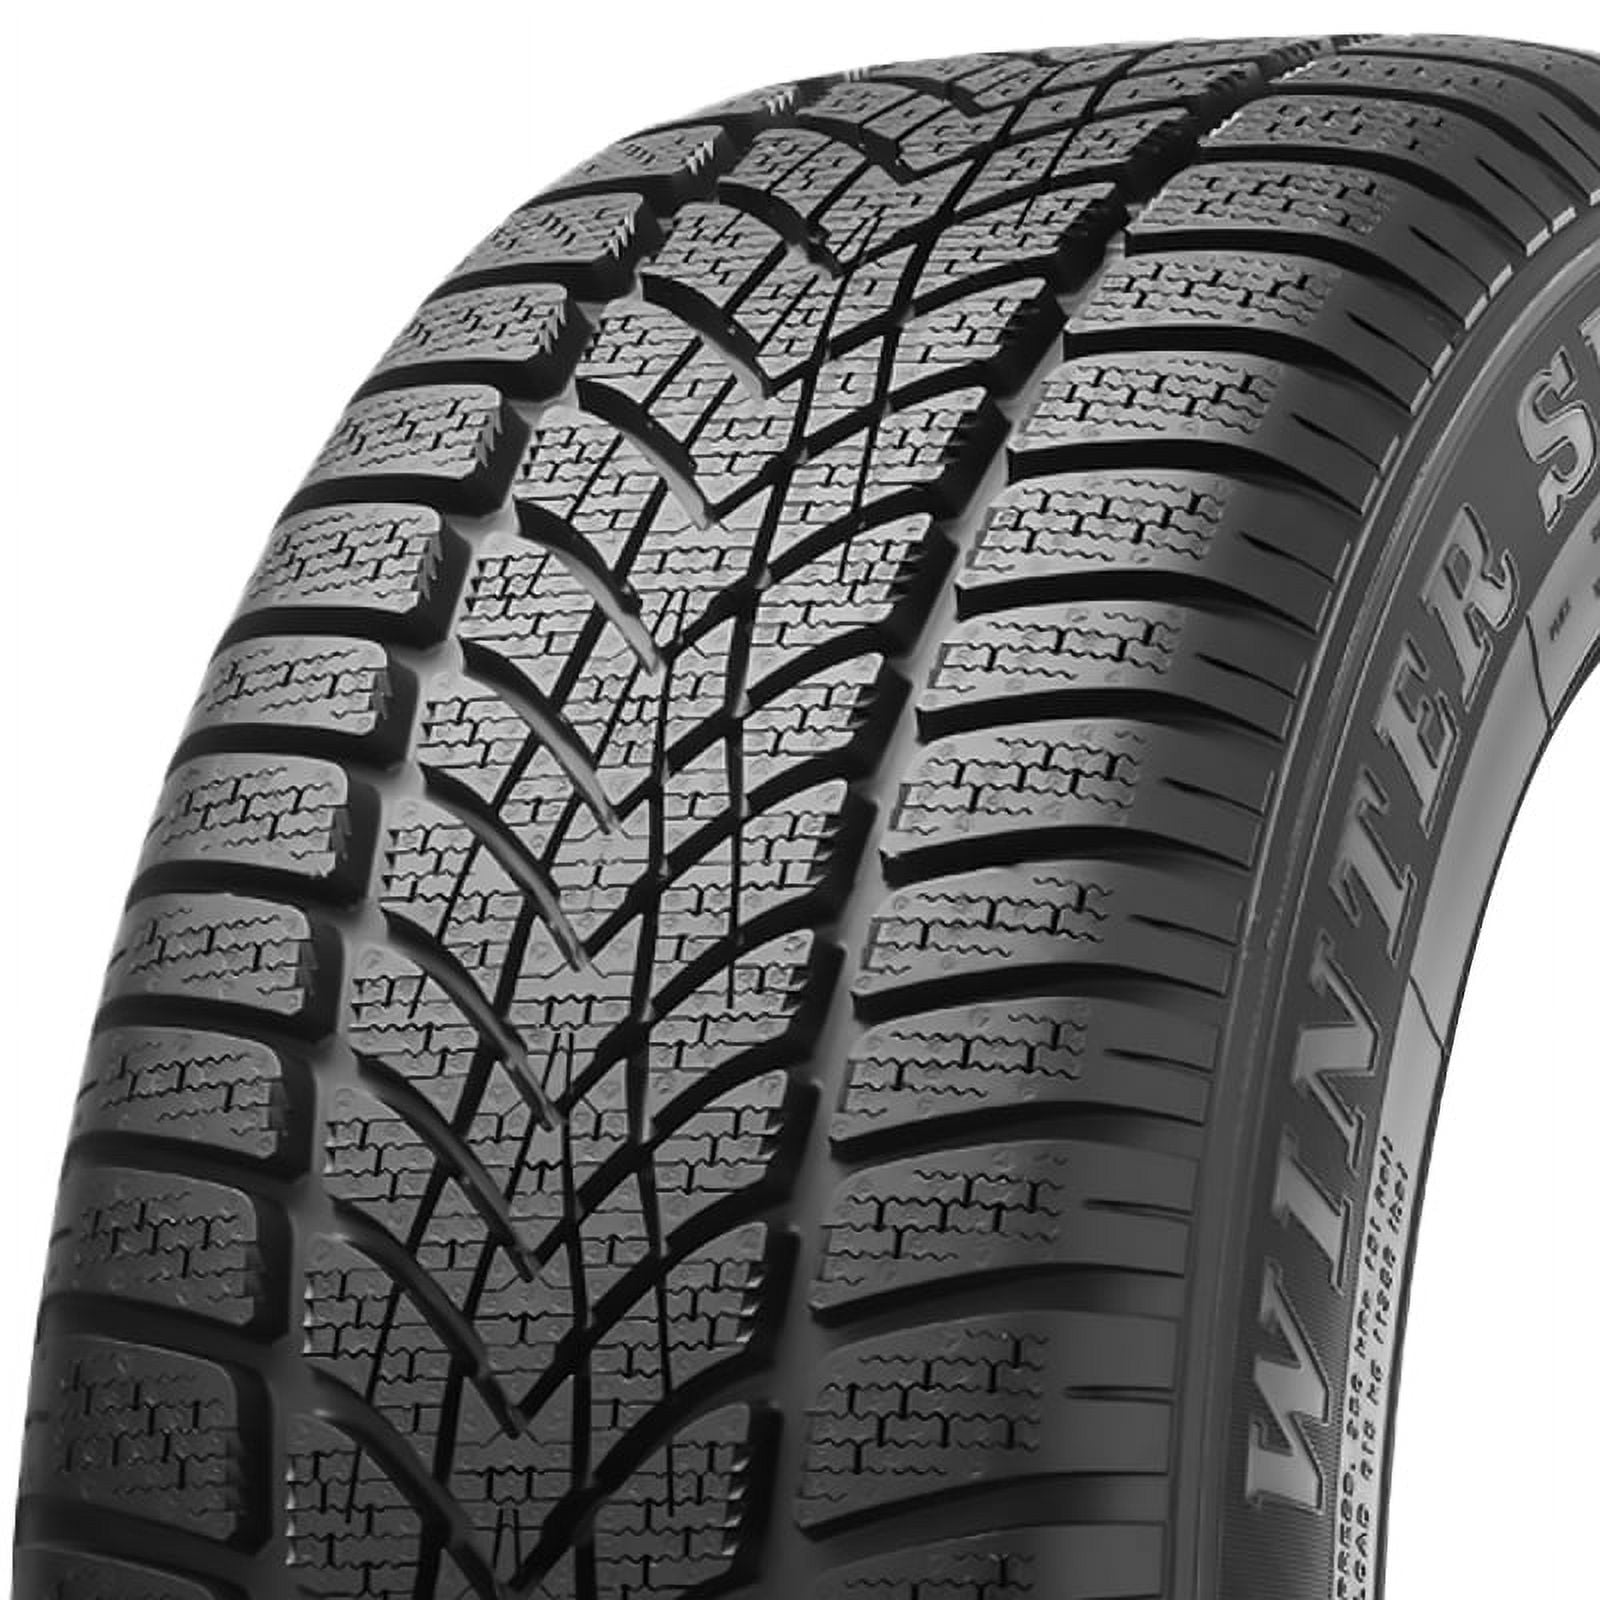 Dunlop sp winter sport 4d P275/30R21 98W bsw winter tire Fits: 2020-21  Polestar Polestar 1 Base | Autoreifen